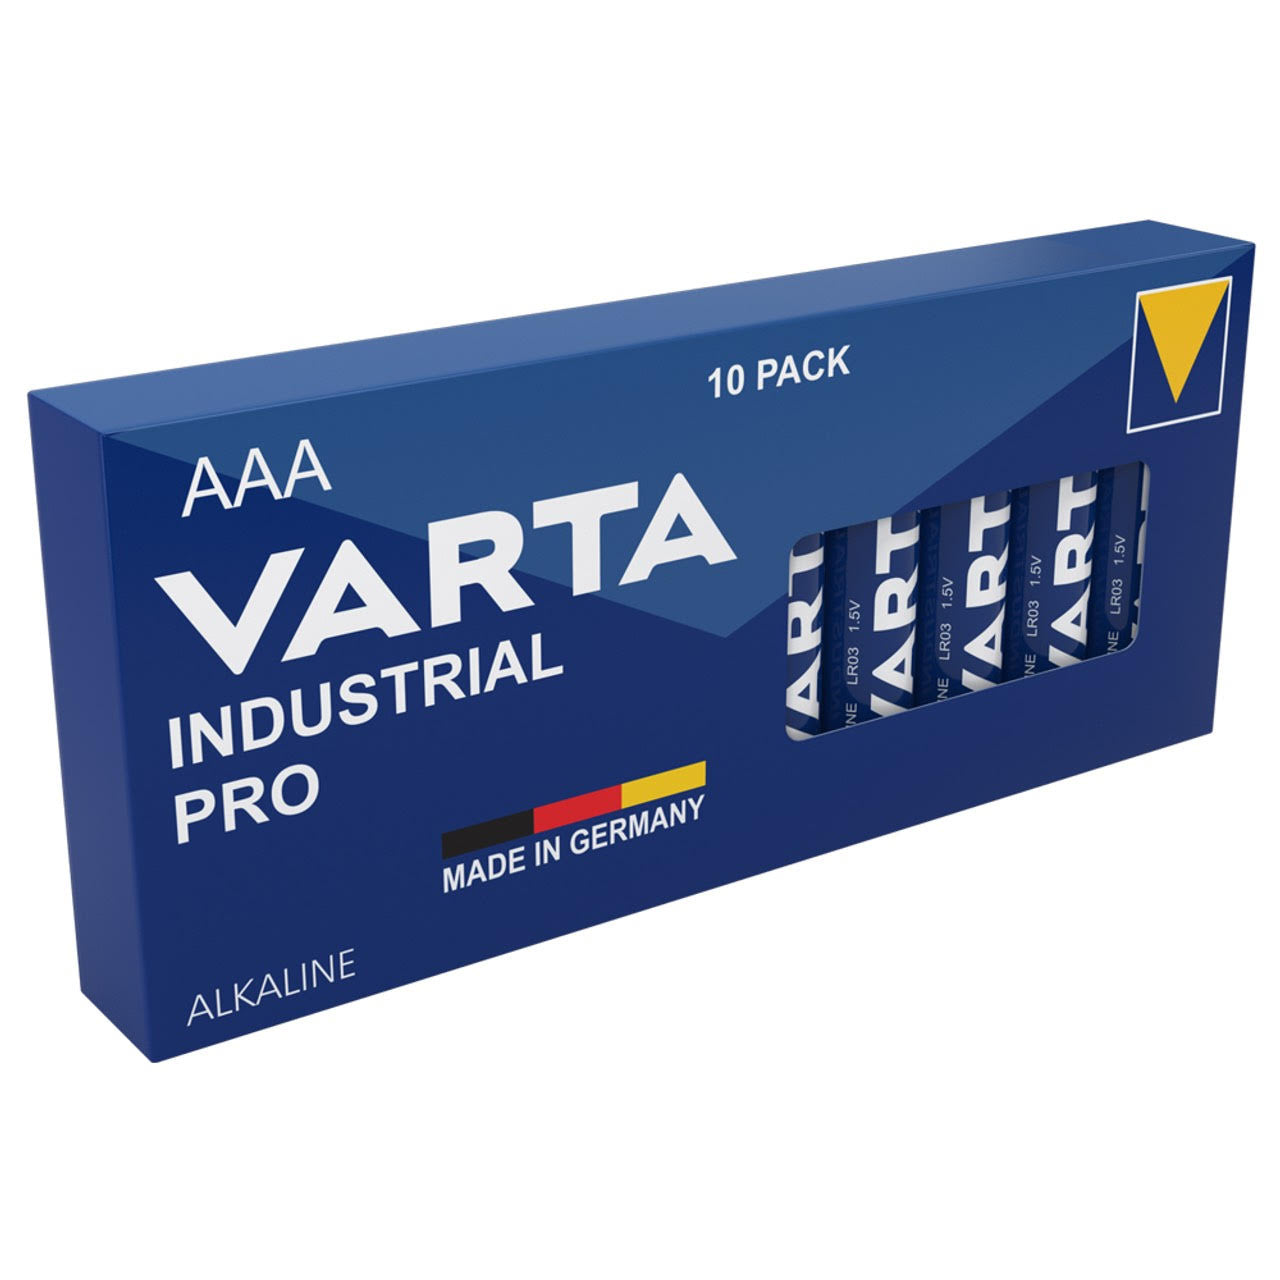 Varta Industrial 4022 9V PP3 6LR61 Batteries, Box of 20